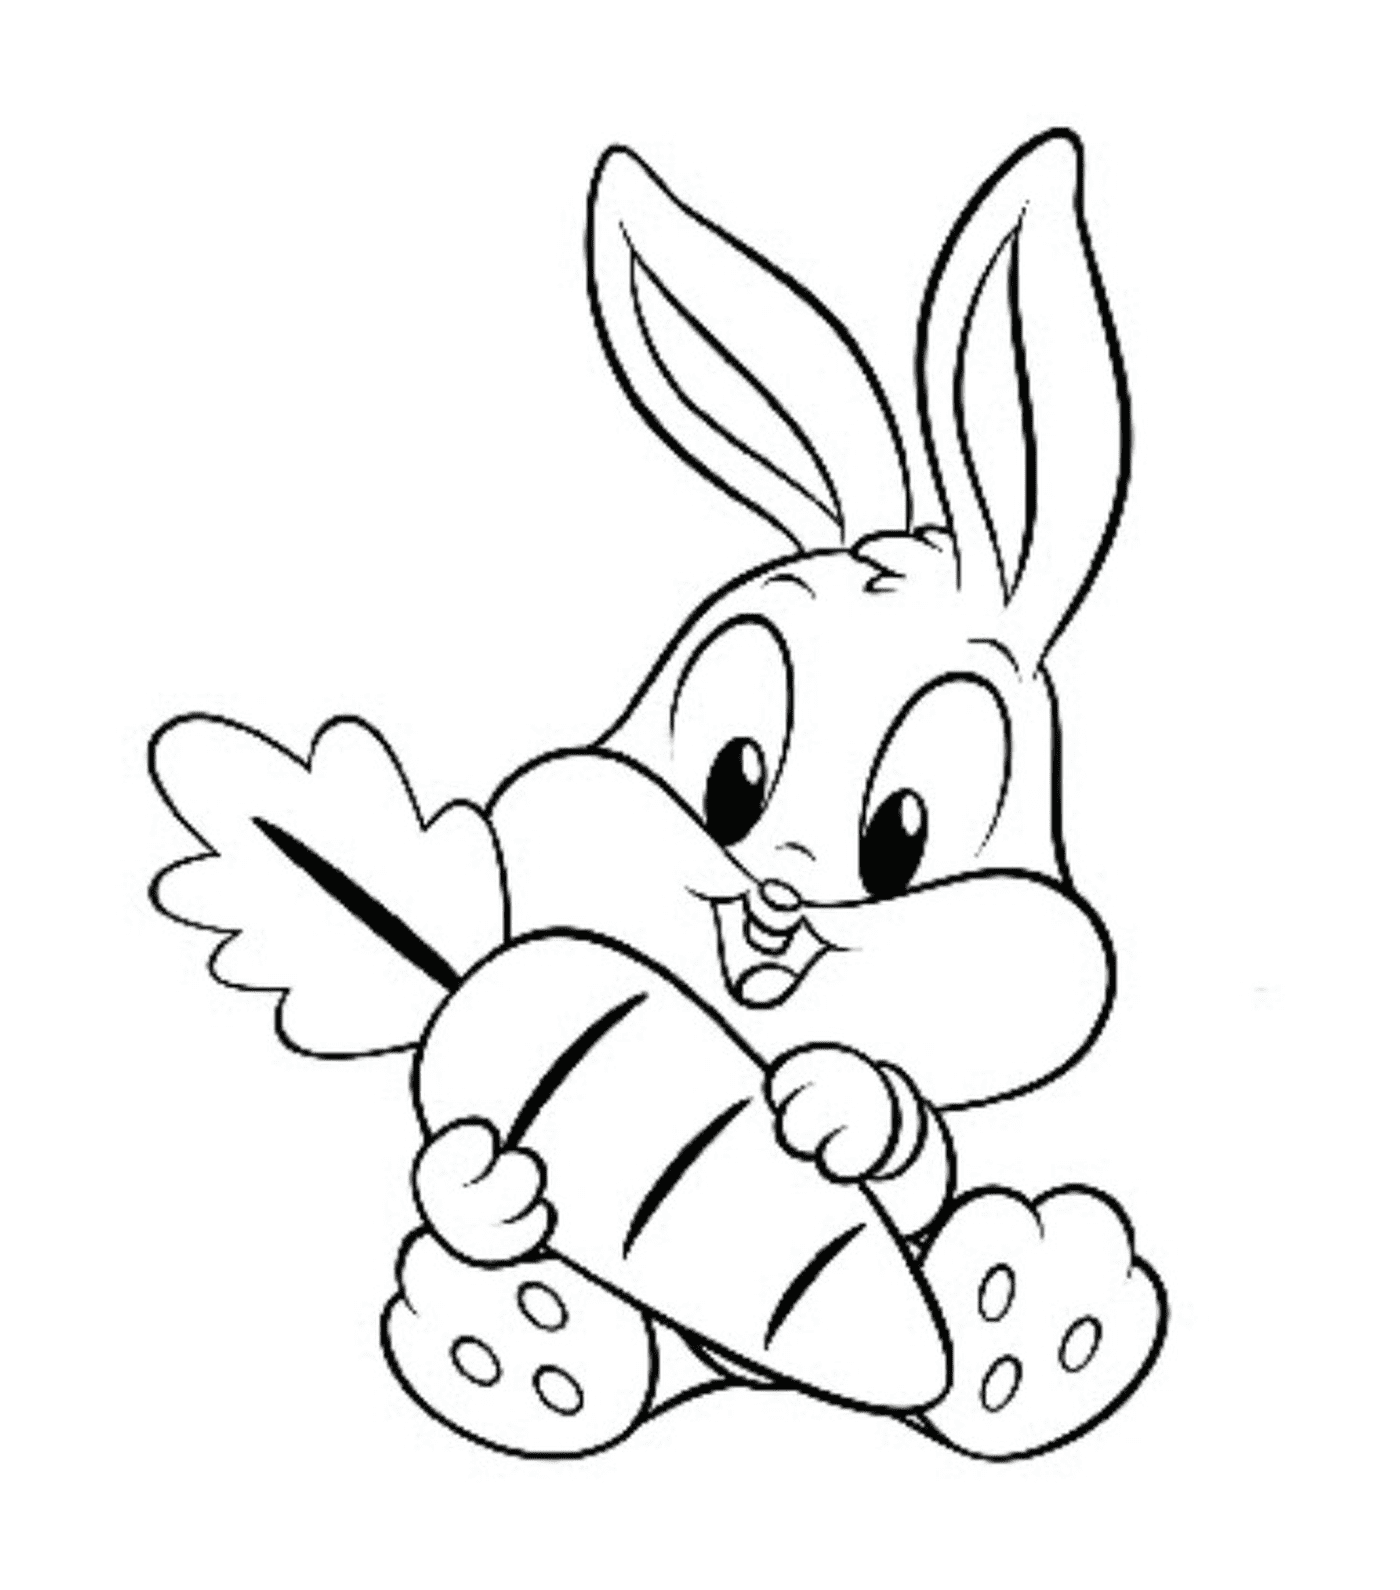  Un conejo sosteniendo una gran zanahoria en su boca 